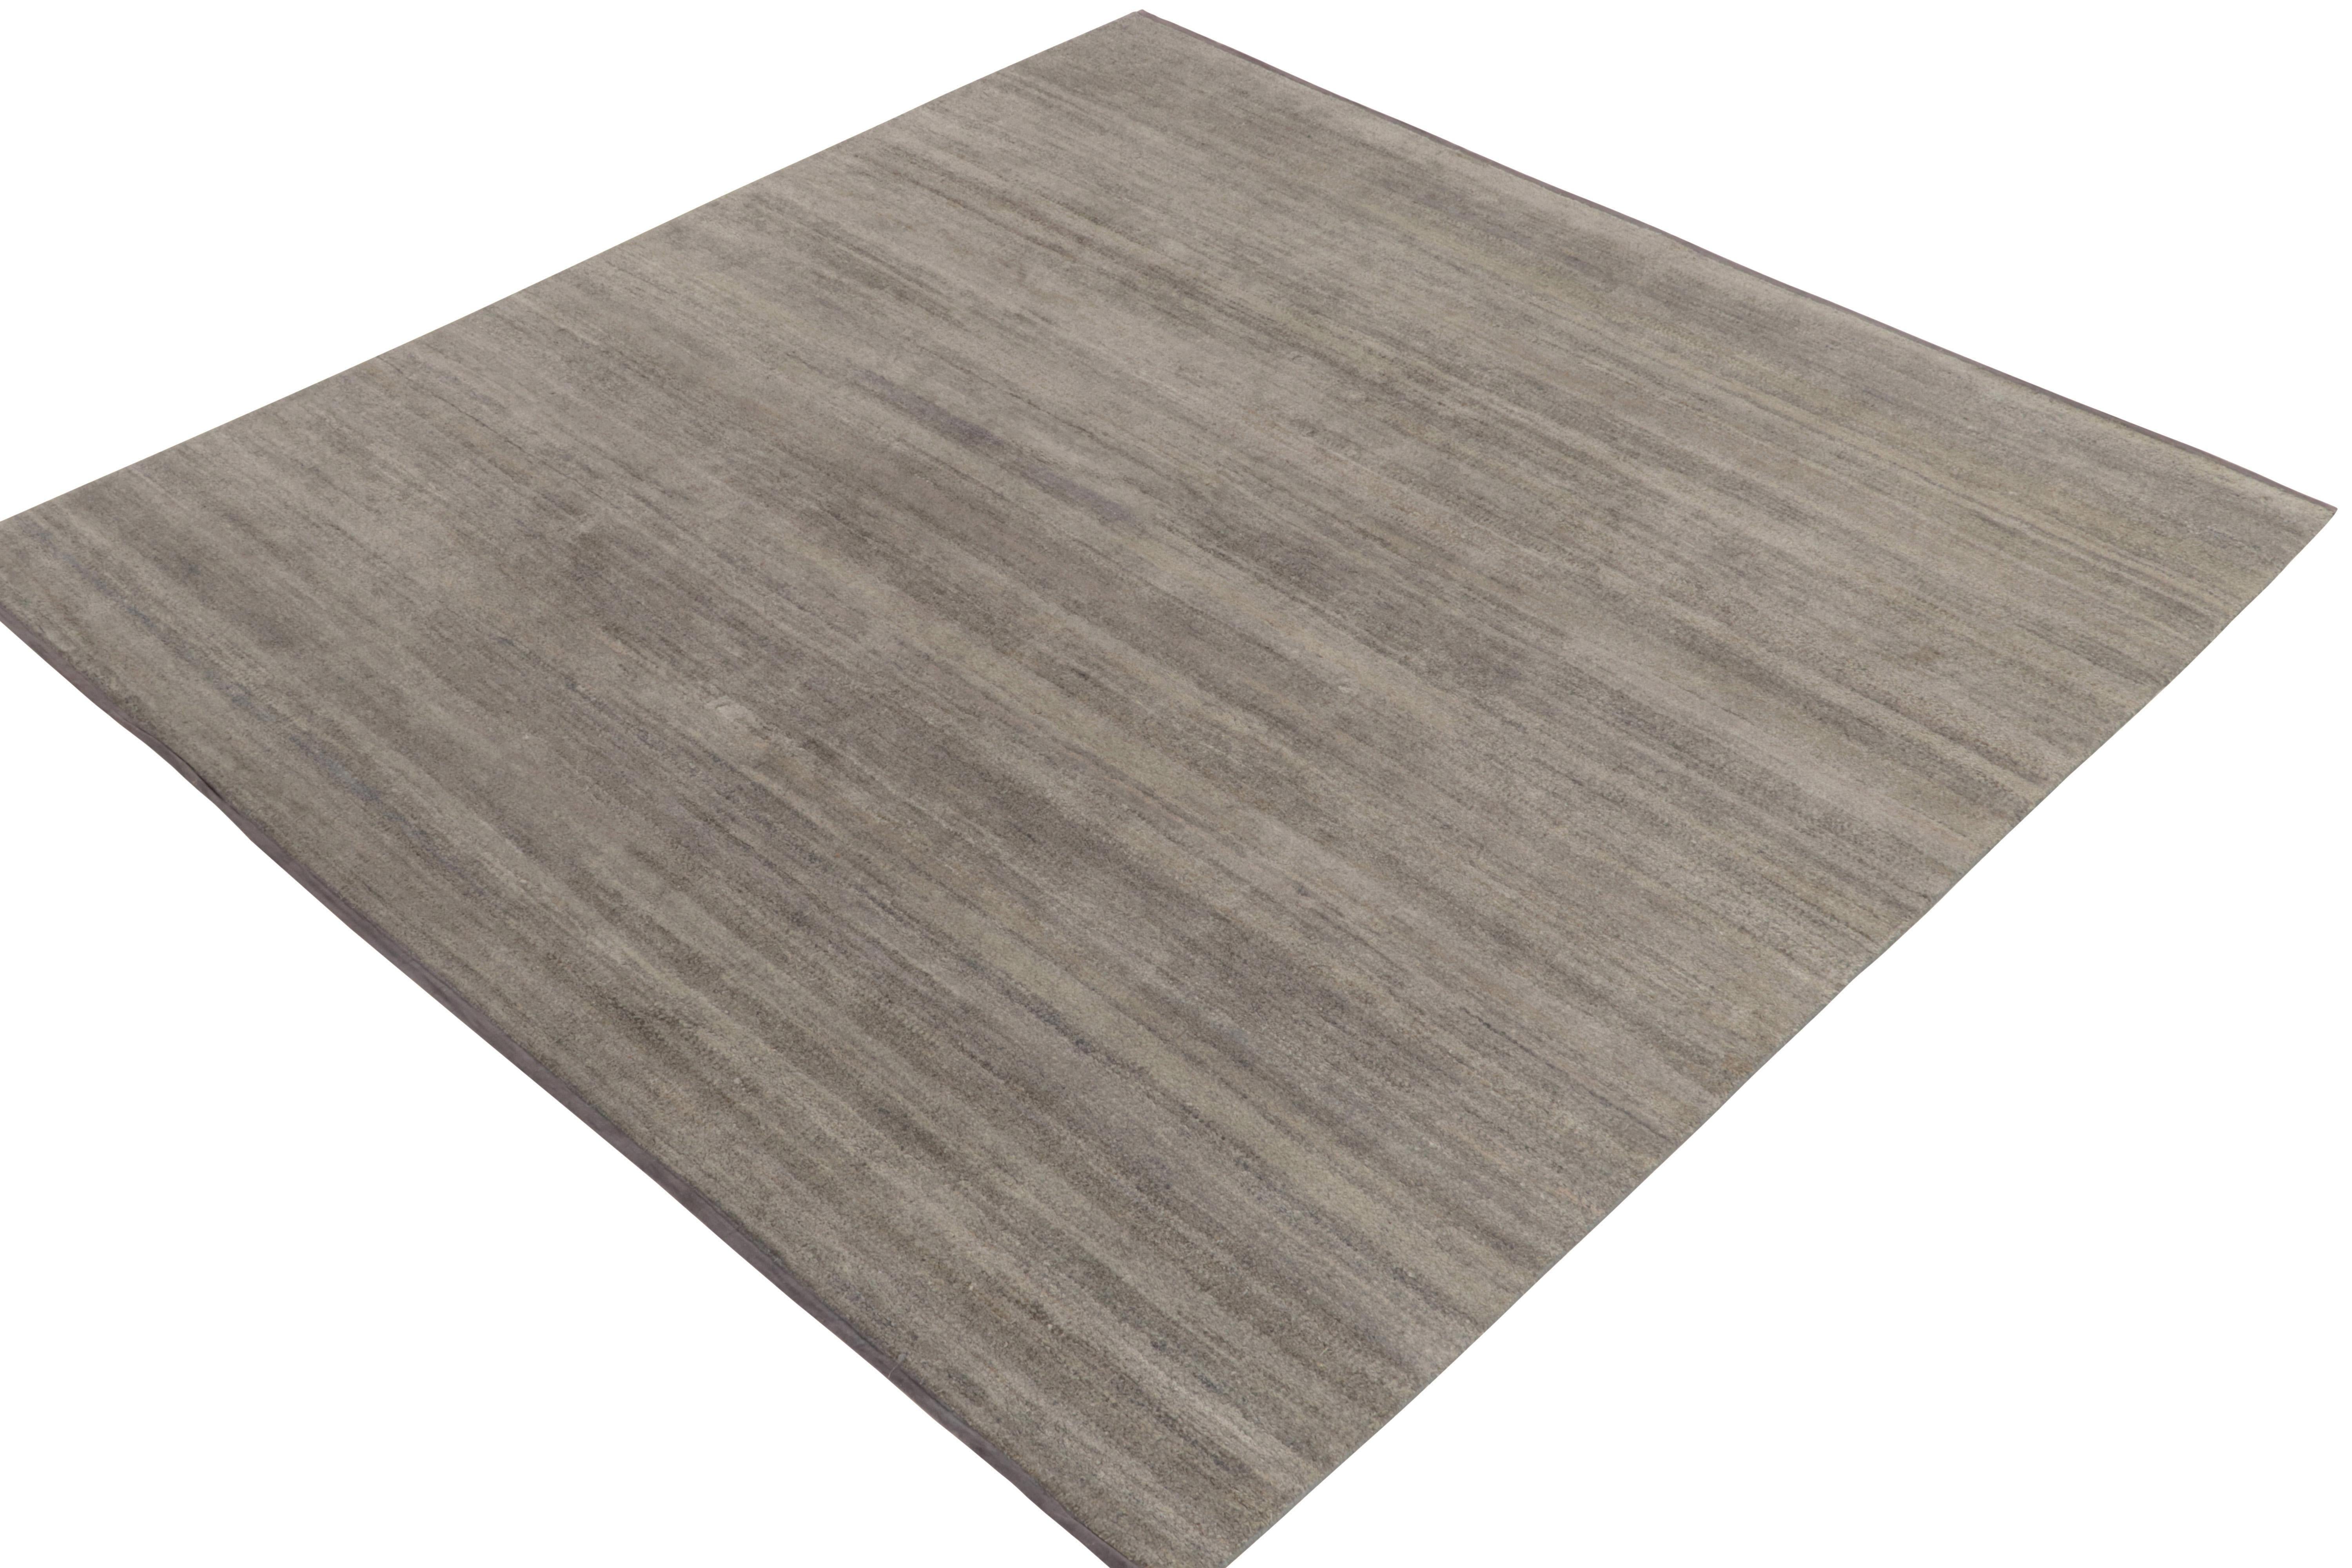 Un tapis carré 8x8 de la collection moderne Texture of Color de Rug & Kilim. Noué à la main dans de la soie, ce tapis présente un caractère mature et réservé, avec des tons gris unis jouant en négatif avec le noir charbon et les teintes beige-brun